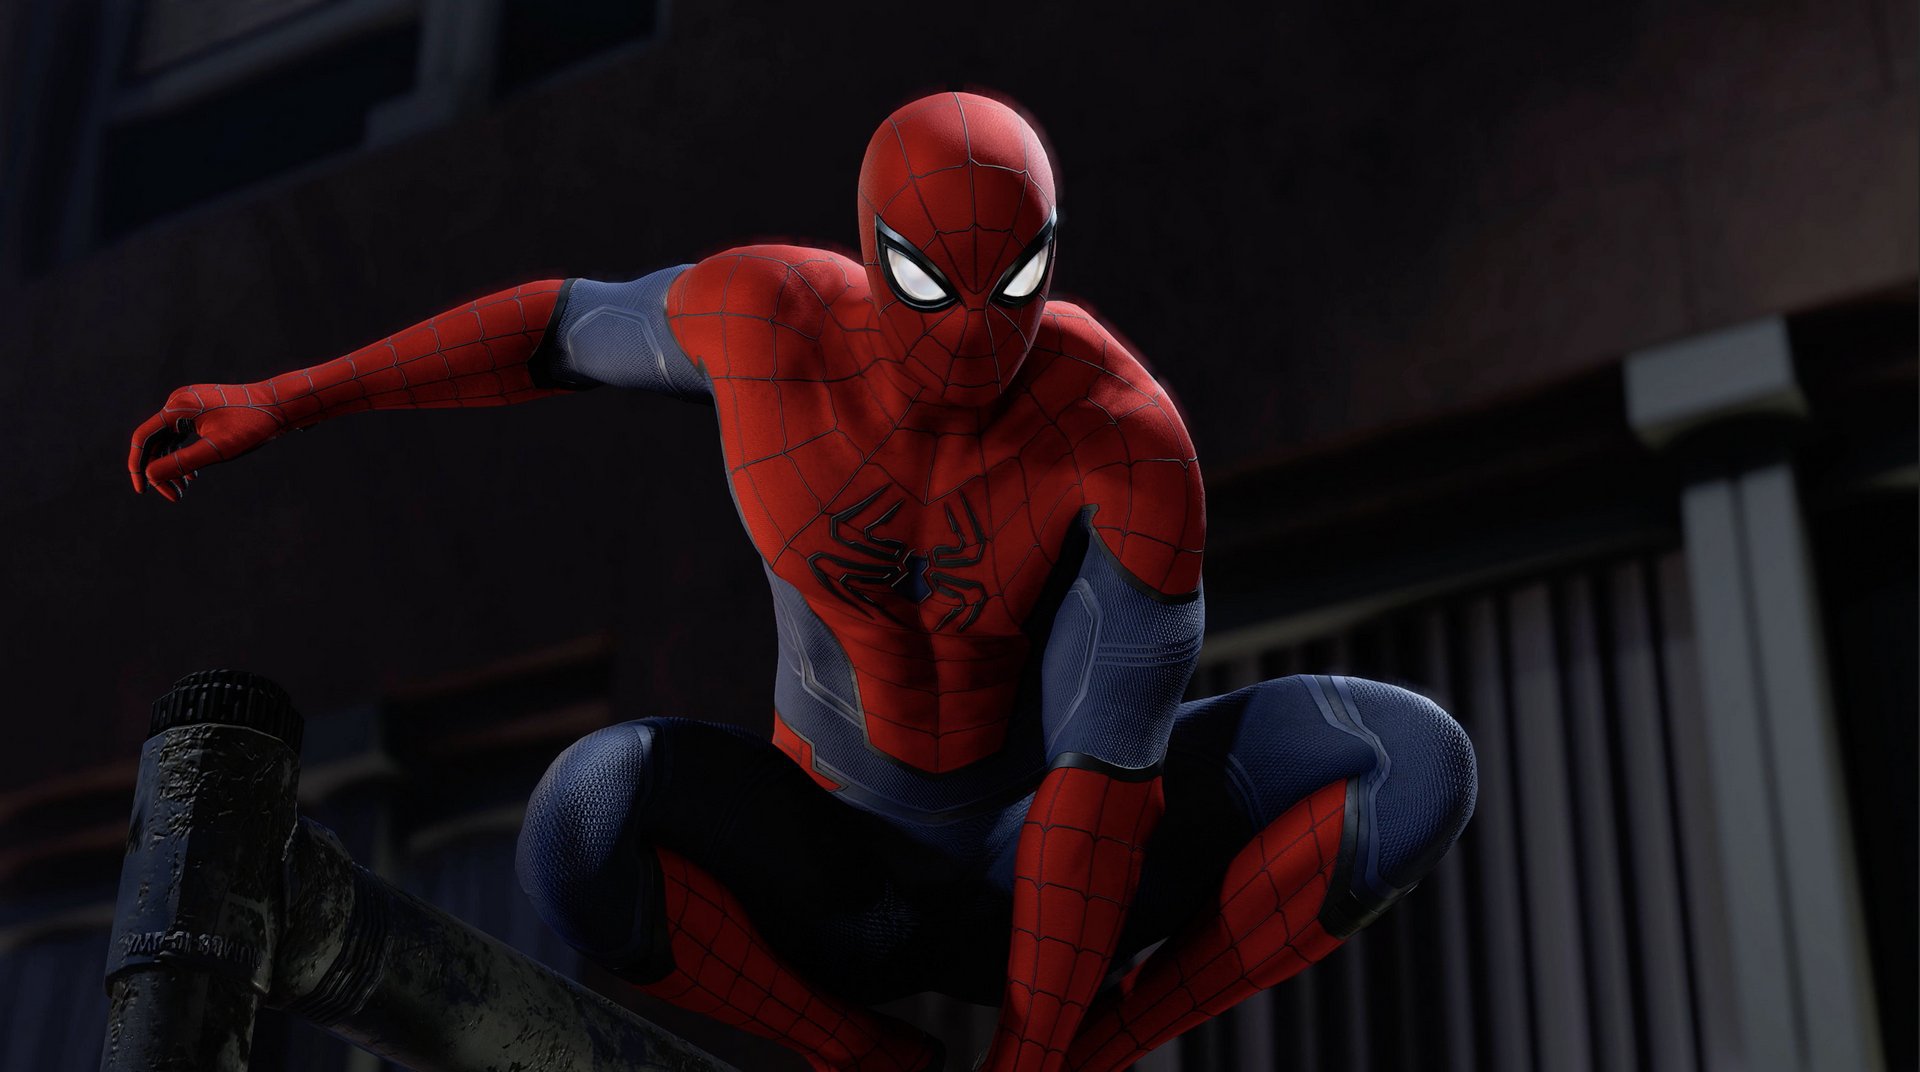 Spider-Man in Marvel's Avengers